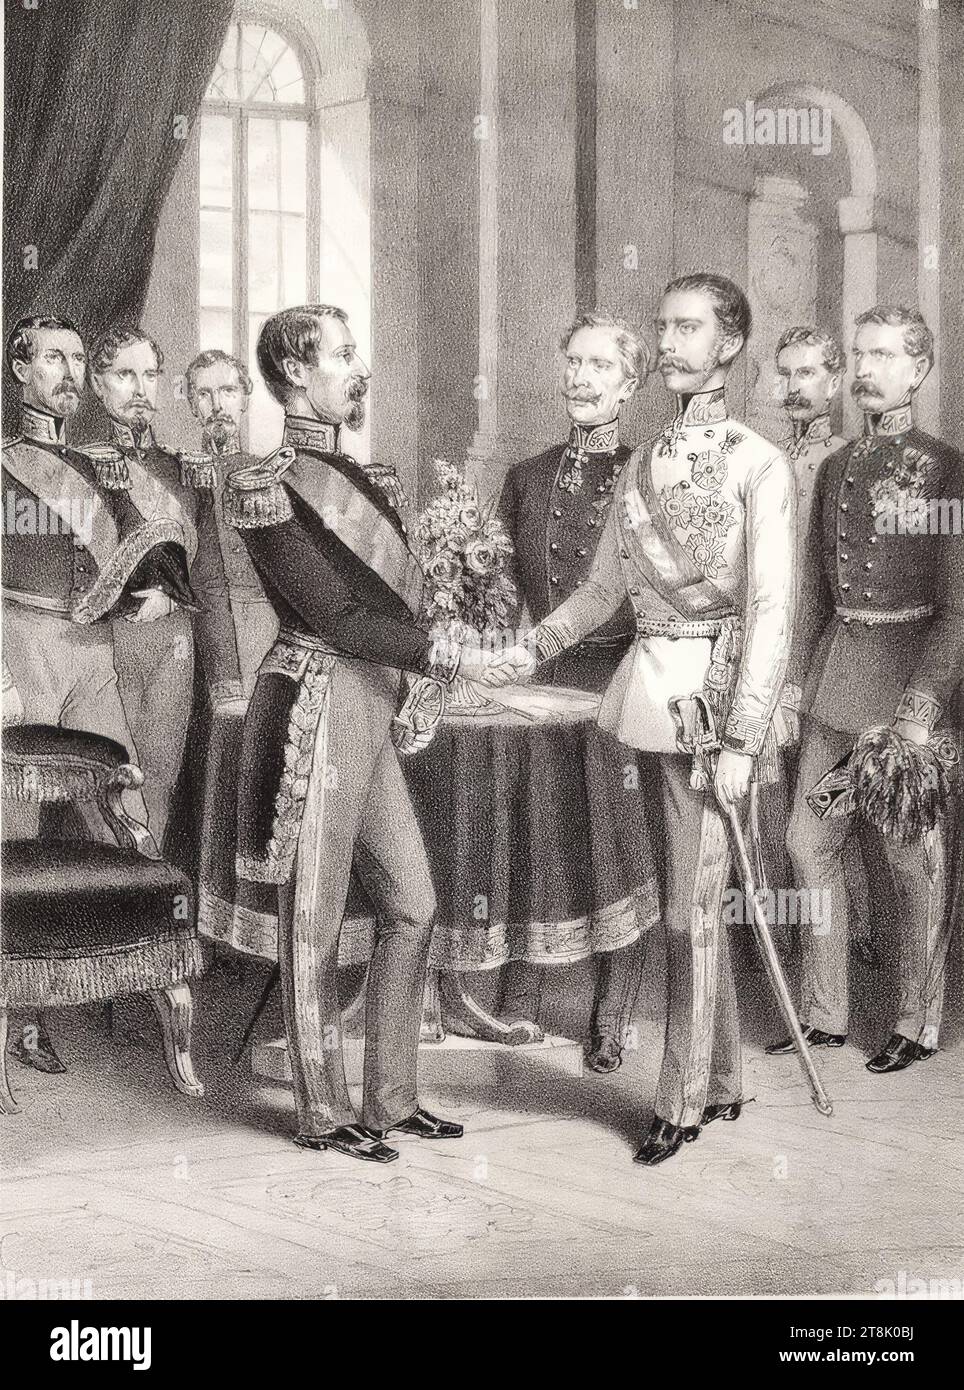 Das Treffen der beiden Monarchen Franz Joseph I. und Napoleon III. In Villafranca am 11. Juli 1859.", 1859, Druck, Lithographie auf Papier, Blatt: 44,9 x 29,7 cm, langer Stempel "BIBLIOTHEK, DES K.K., MINISTERIUM FÜR POLIZEI", Recto, runder Stempel "BIBLIOTHEK DES RATSVORSITZES DES KK-MINISTERS", Recto Stockfoto